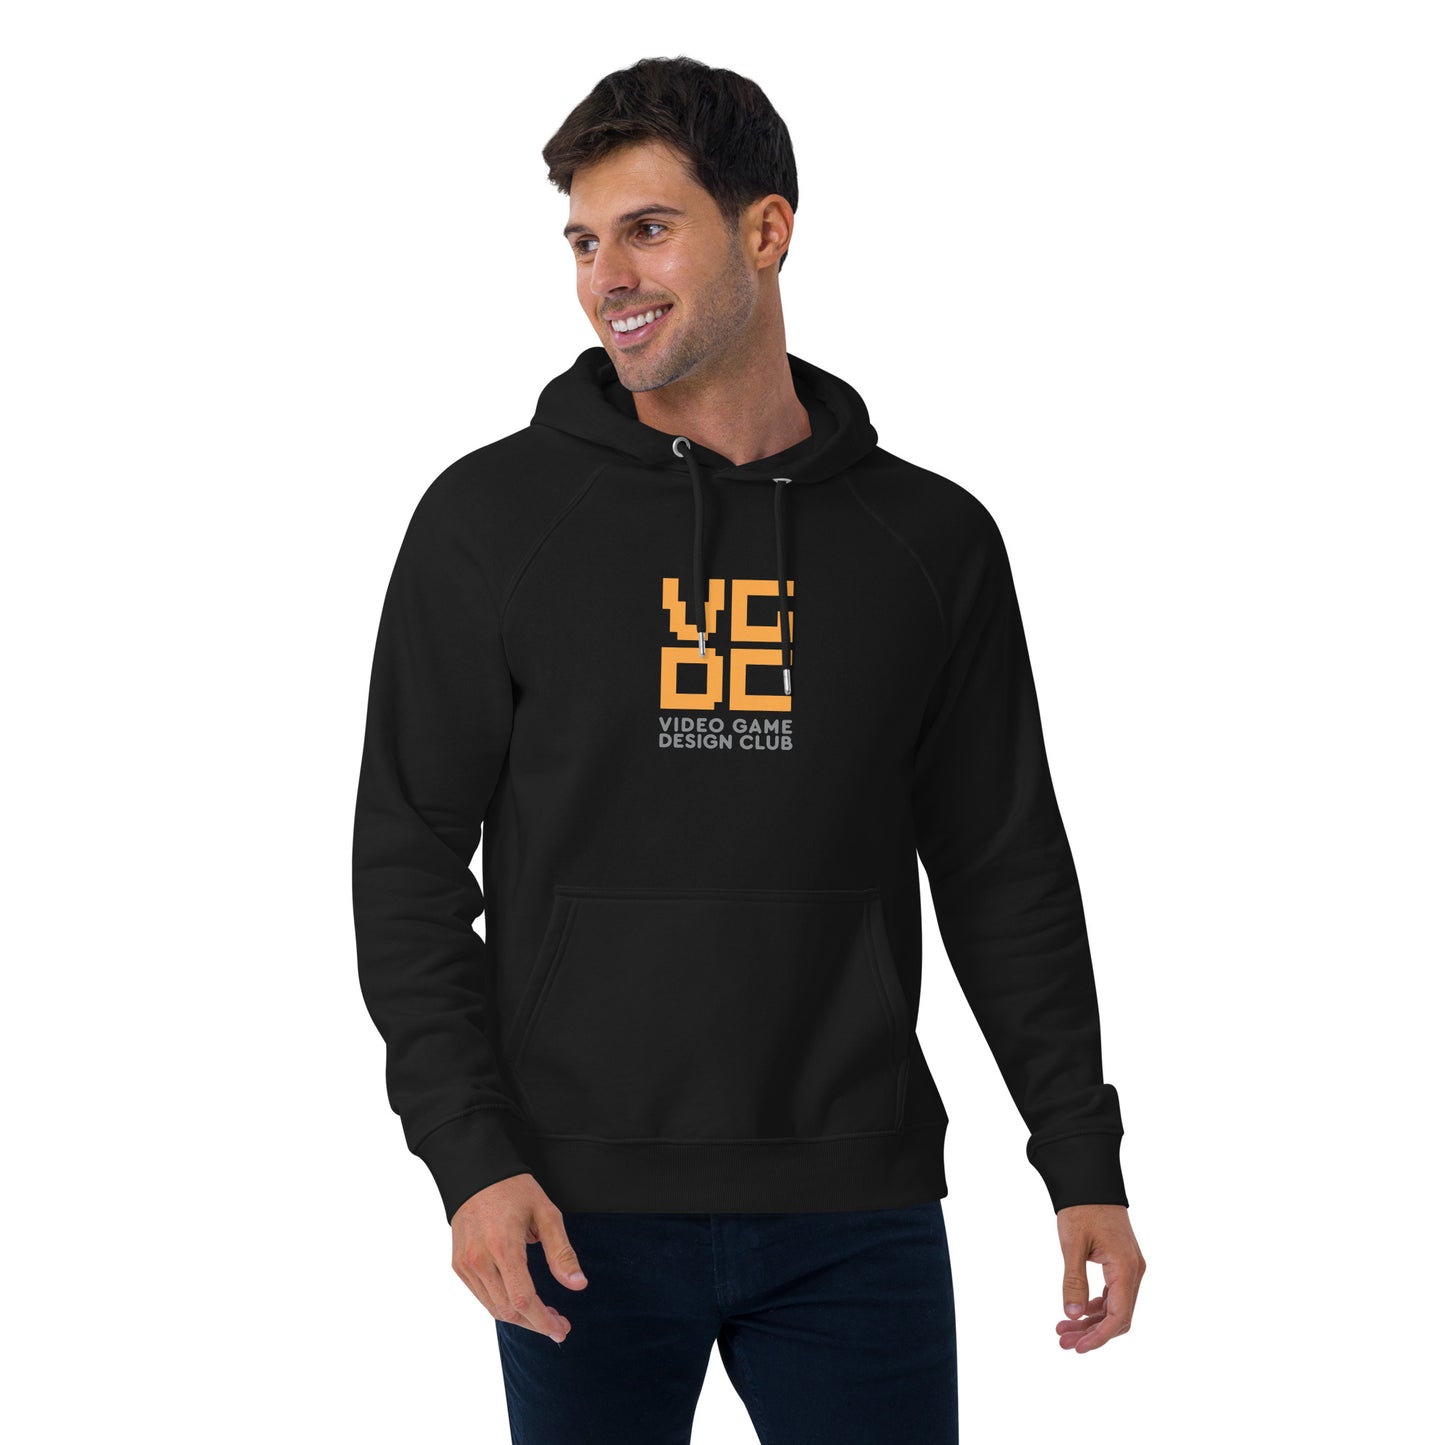 VGDC hoodie - UNISEX ADULT